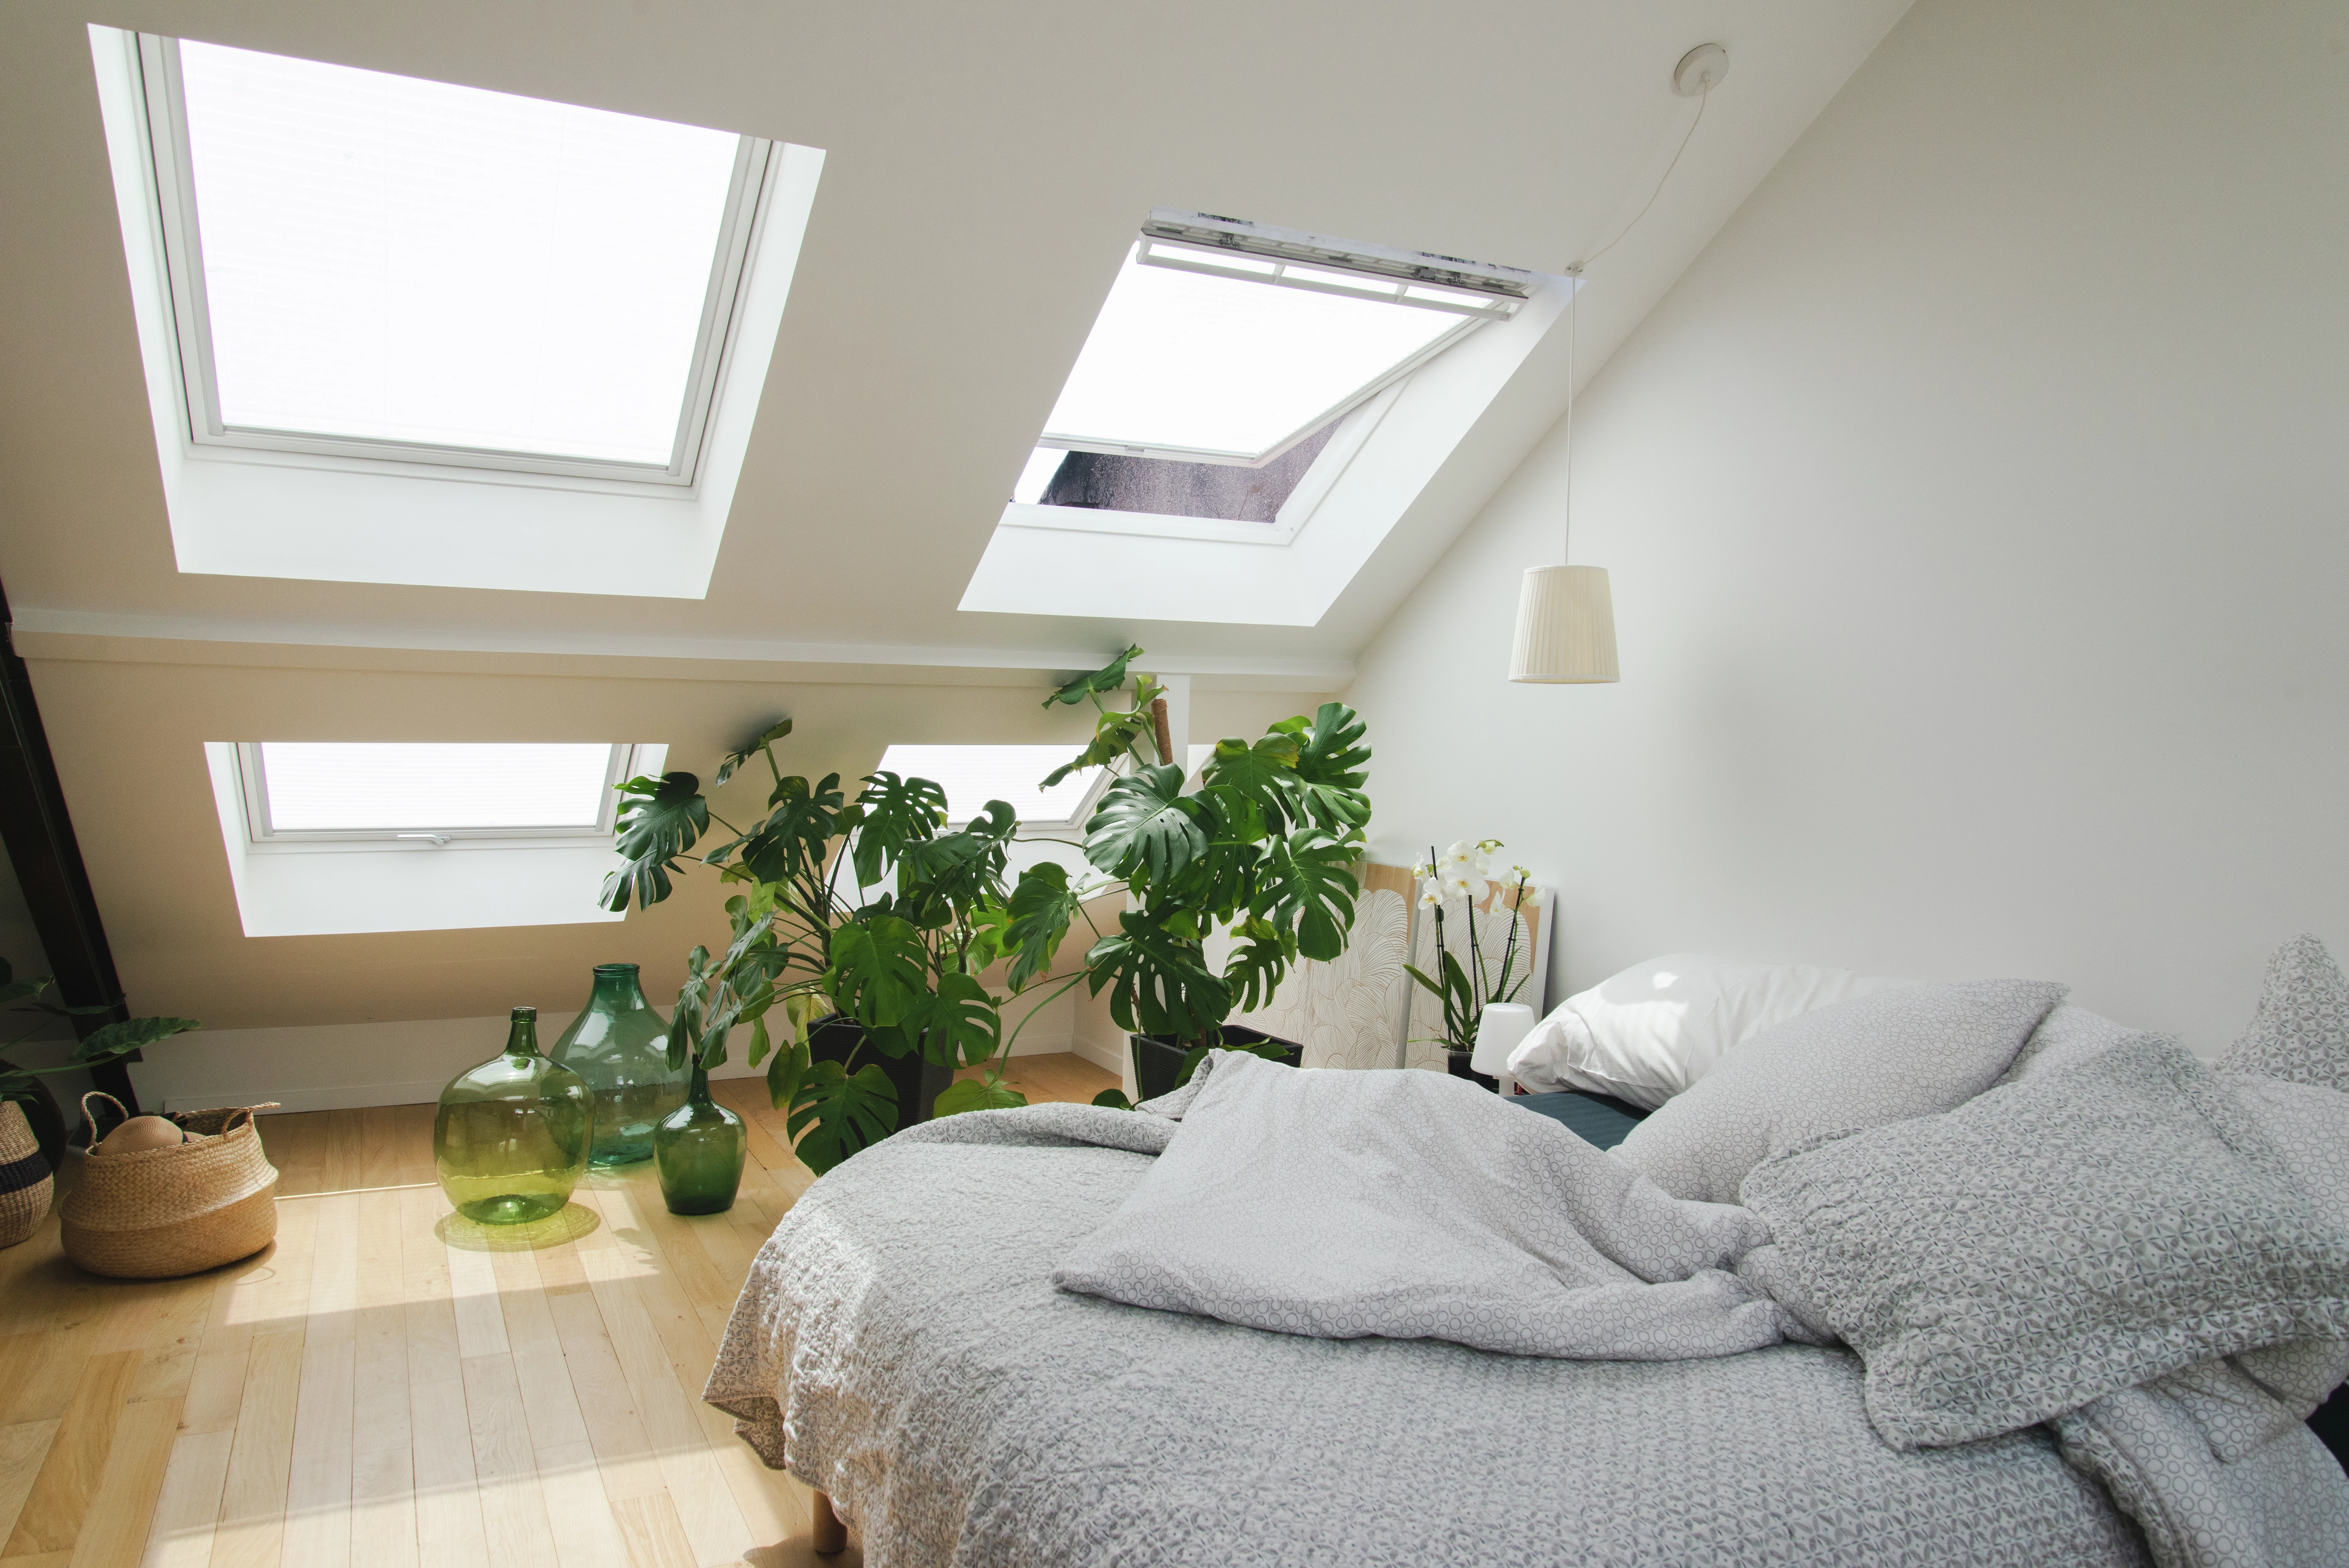 Chambre mansardée lumineuse avec plantes vertes et linge de lit gris.